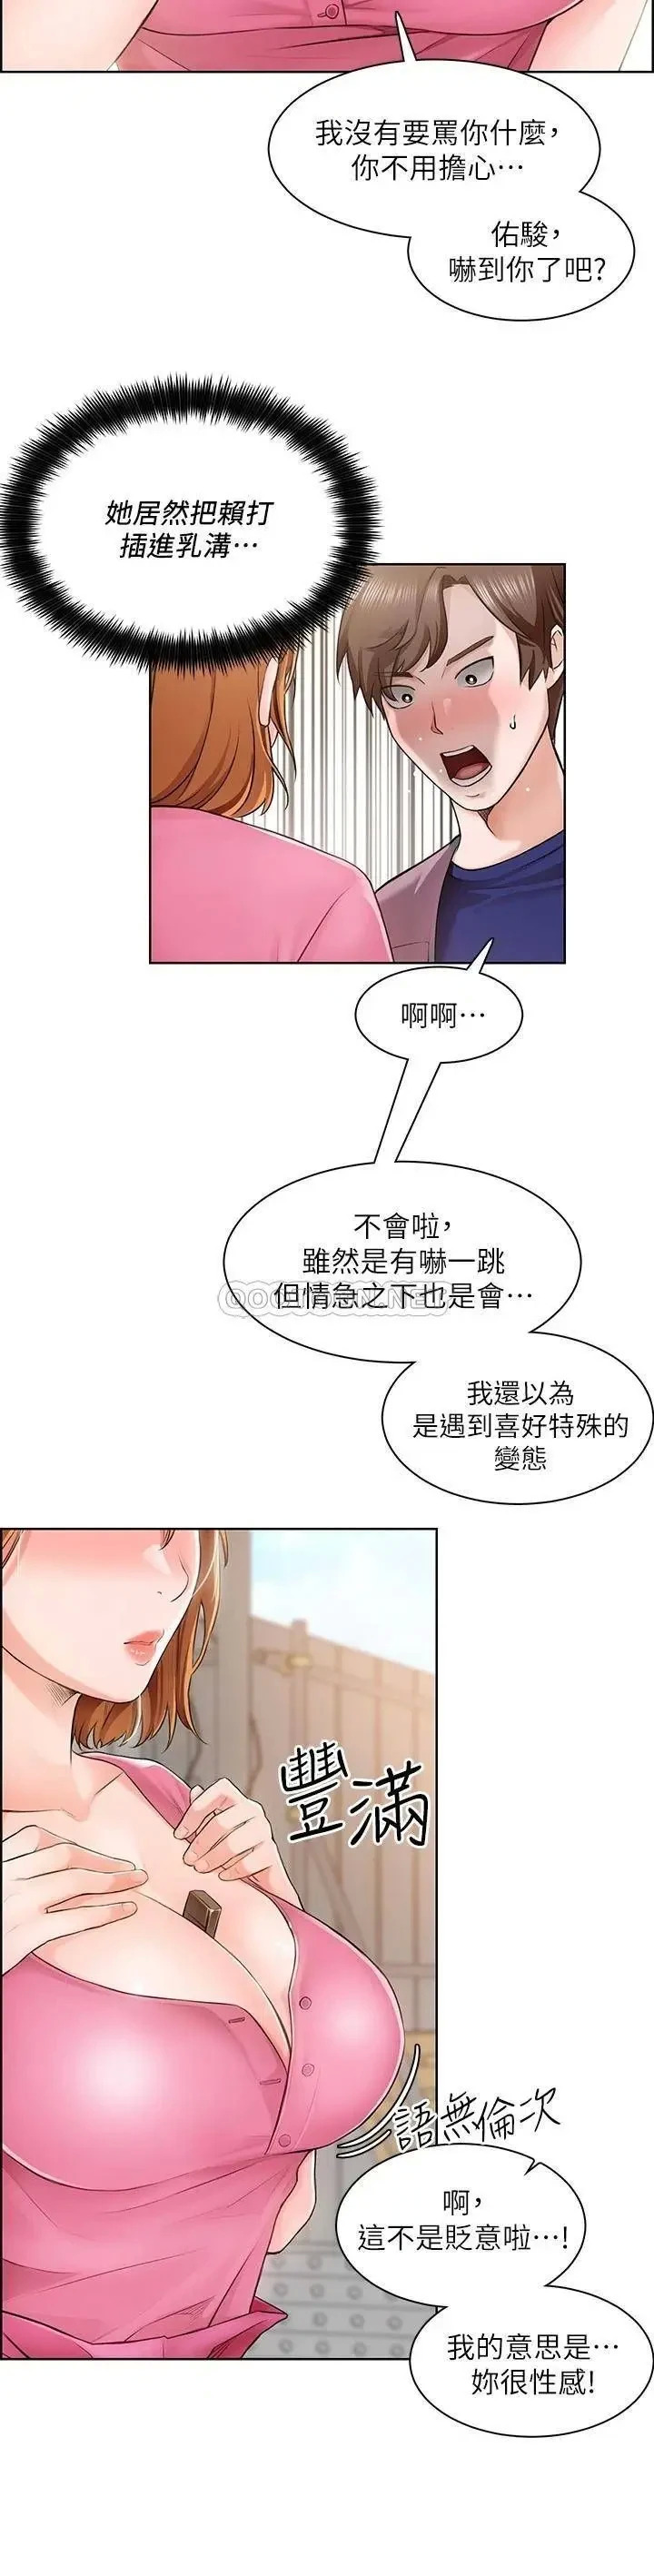 《诚徵粗工》漫画 第2话 淫养师的大胆诱惑